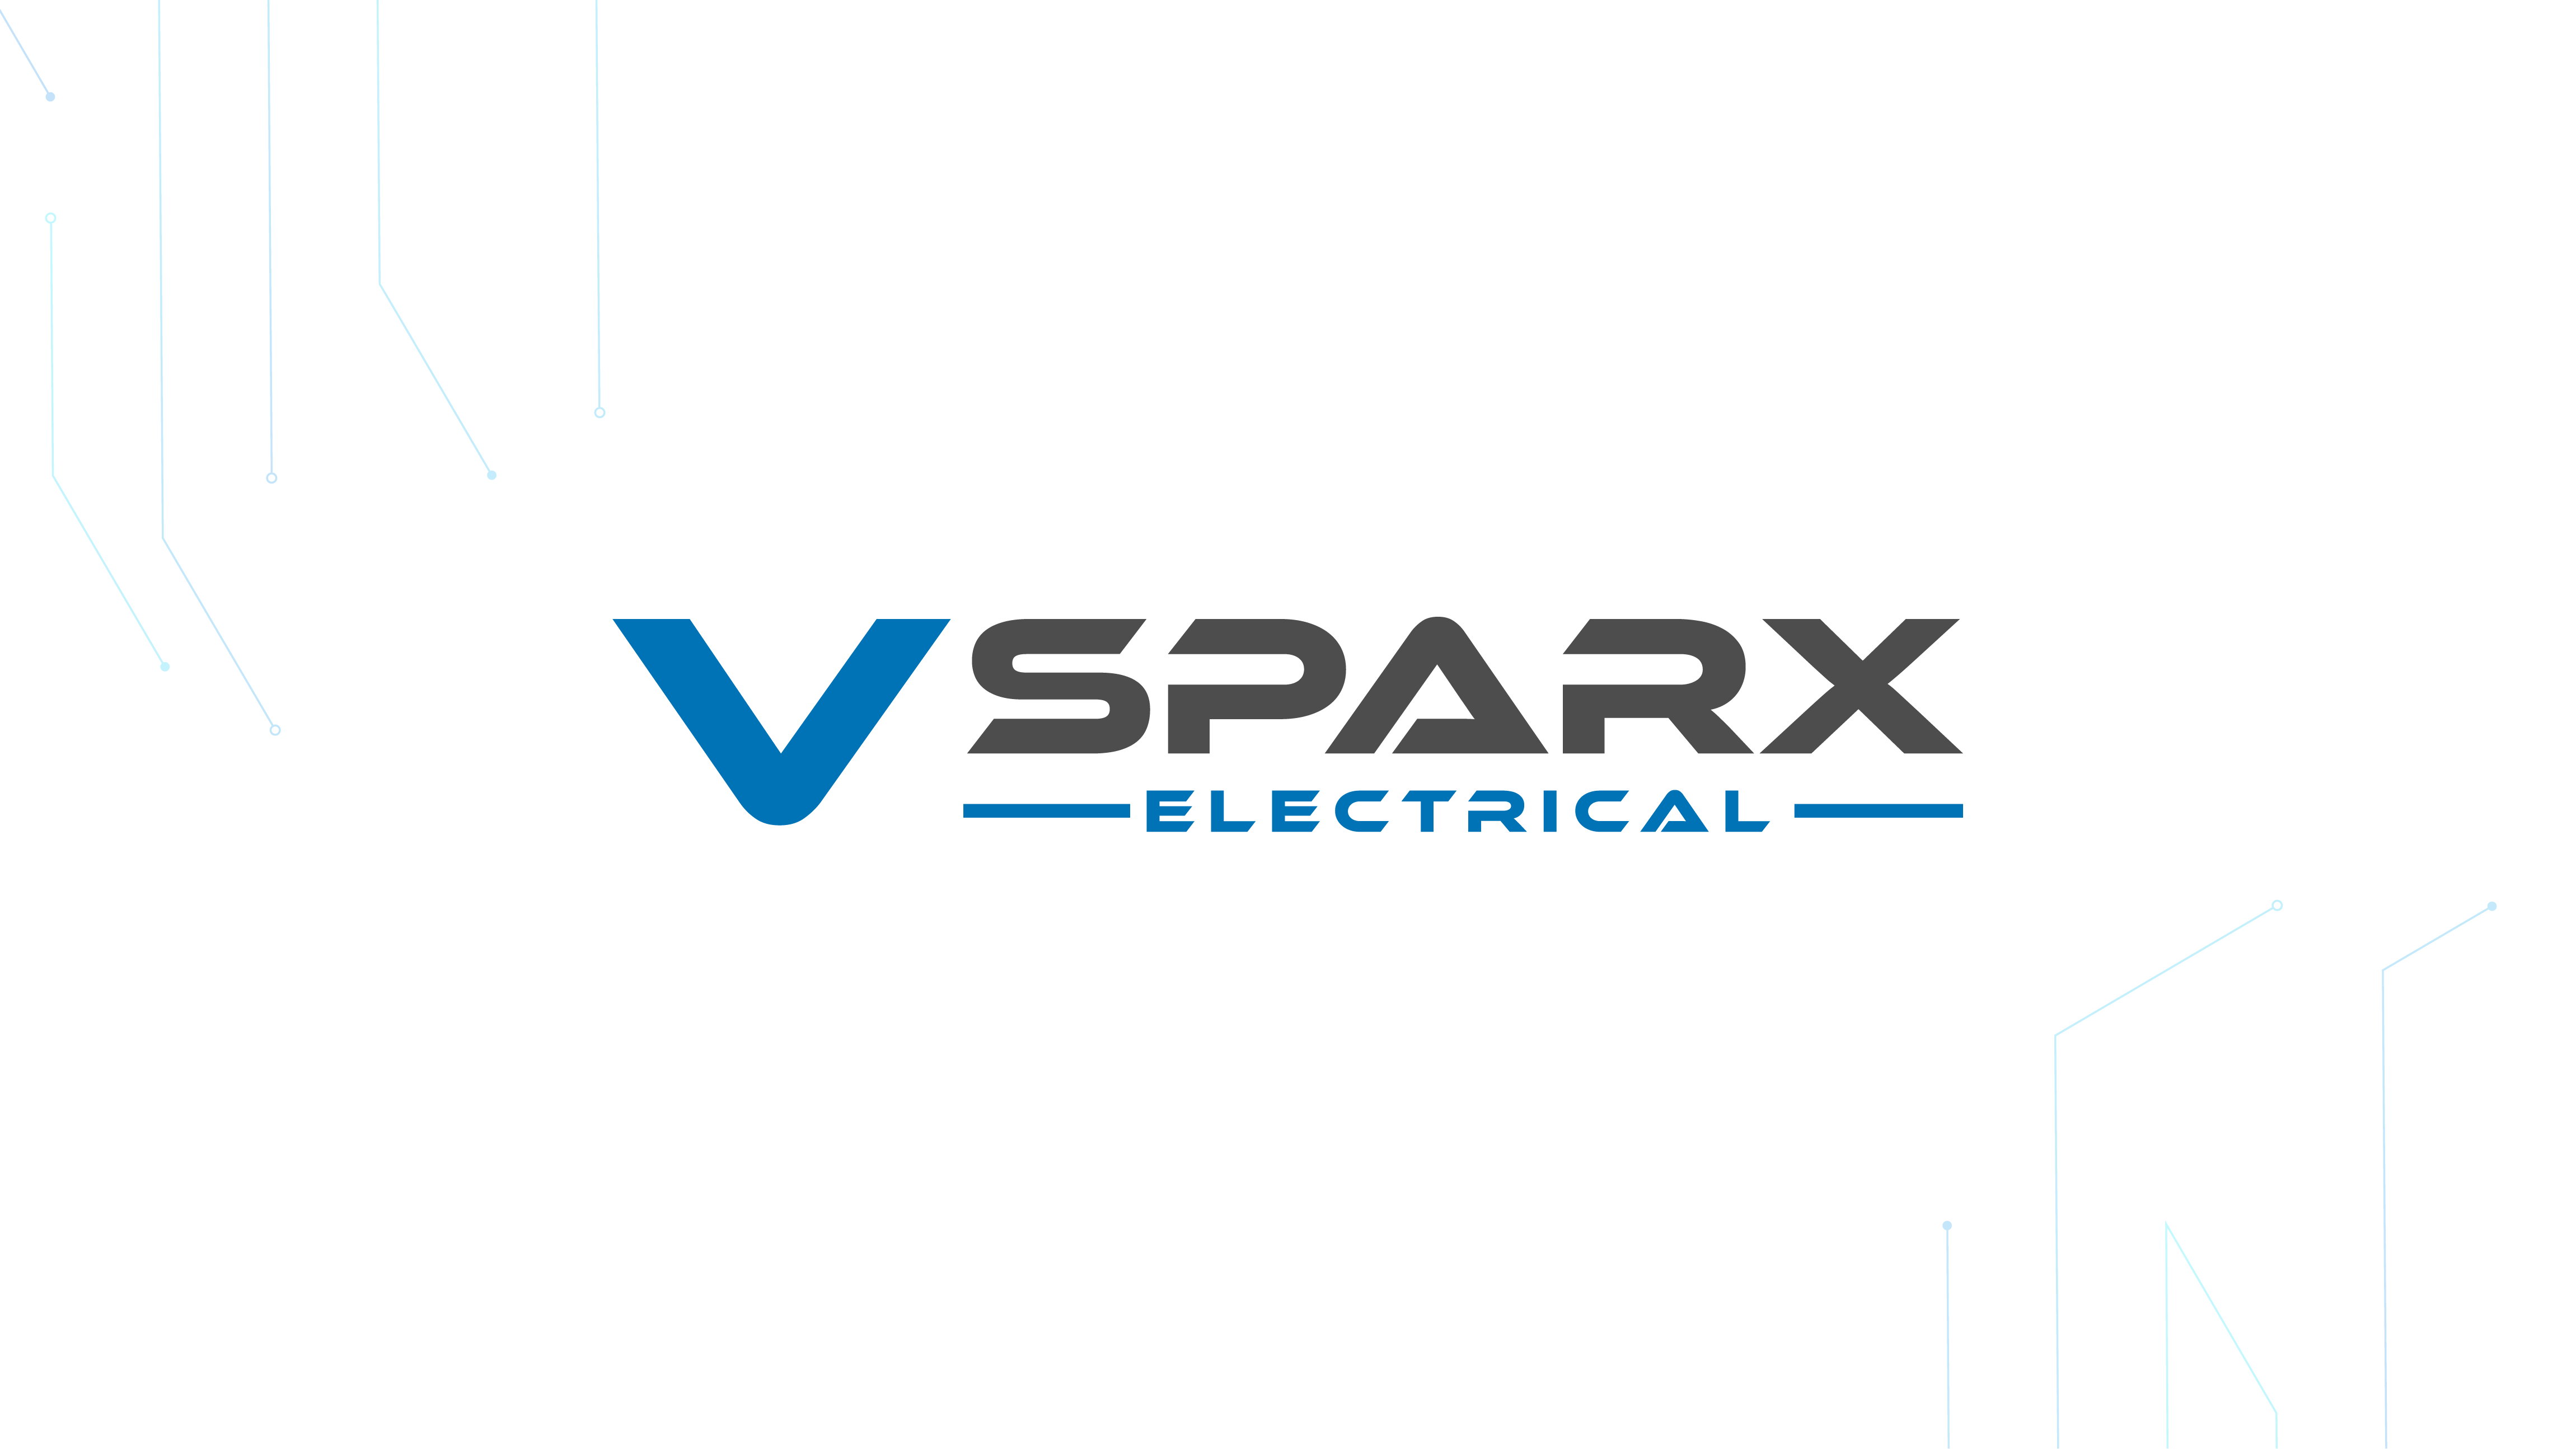 Vsparx Electrical – Website Design